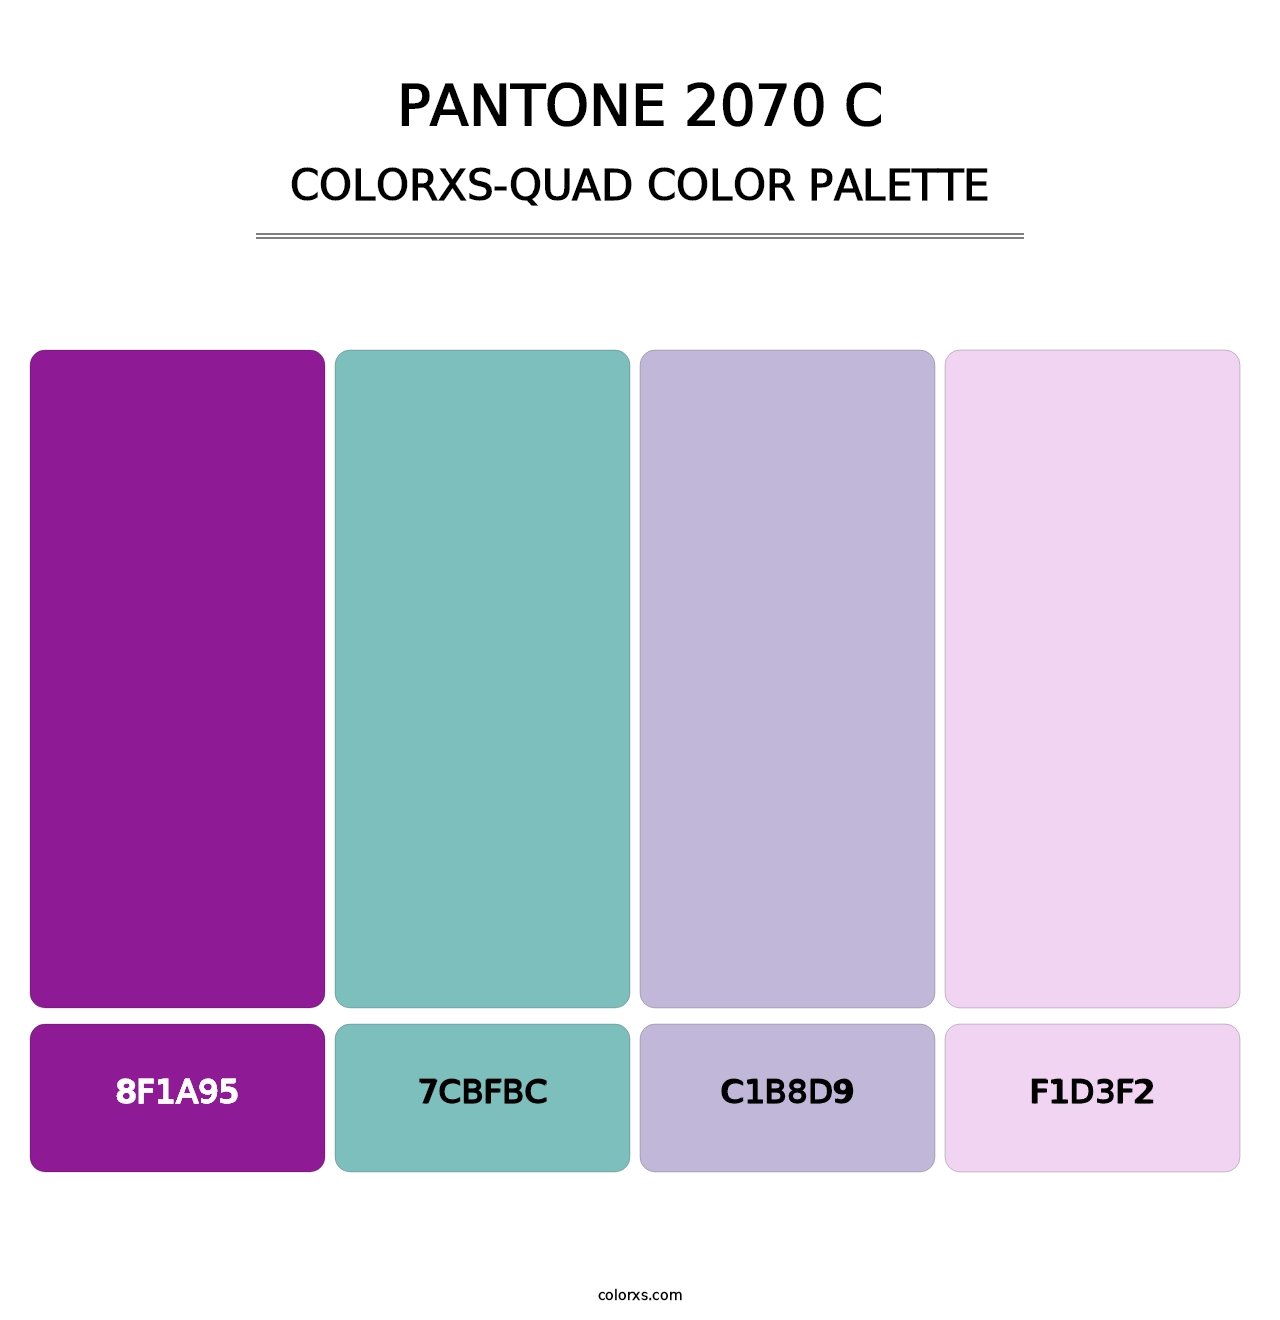 PANTONE 2070 C - Colorxs Quad Palette